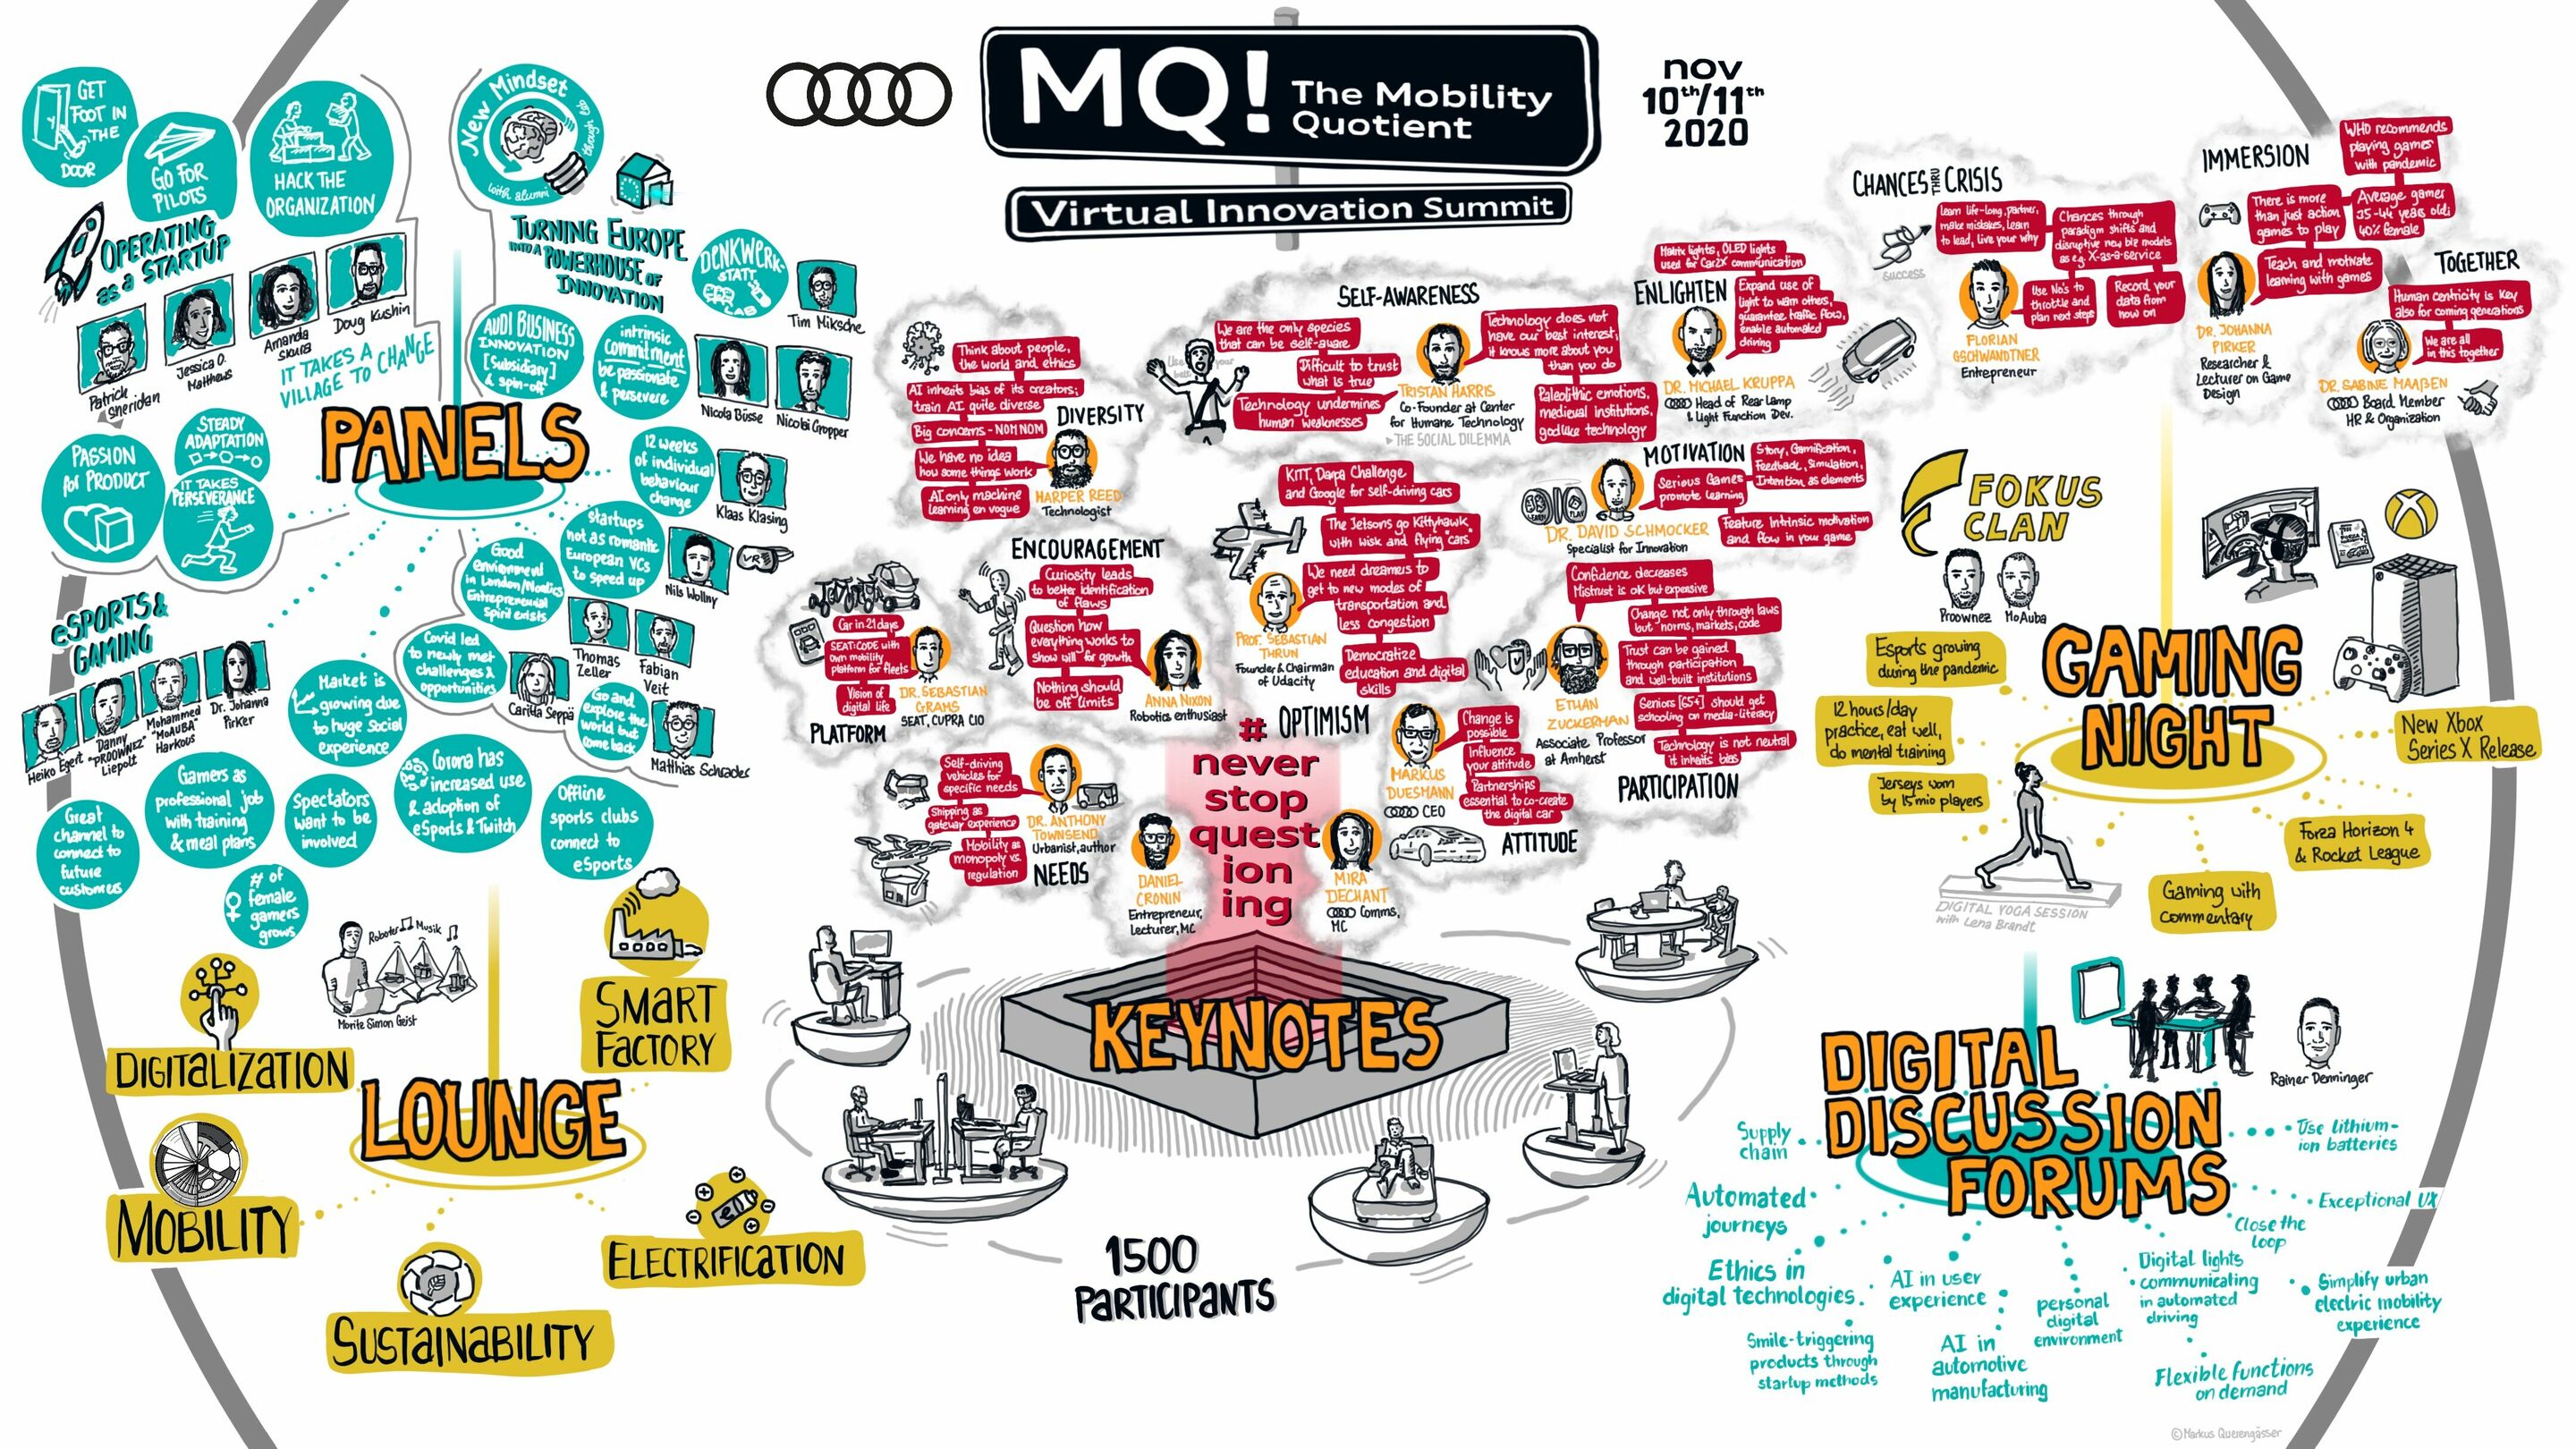 Experten diskutieren die Mobilität der Zukunft beim digitalen MQ! Innovation Summit